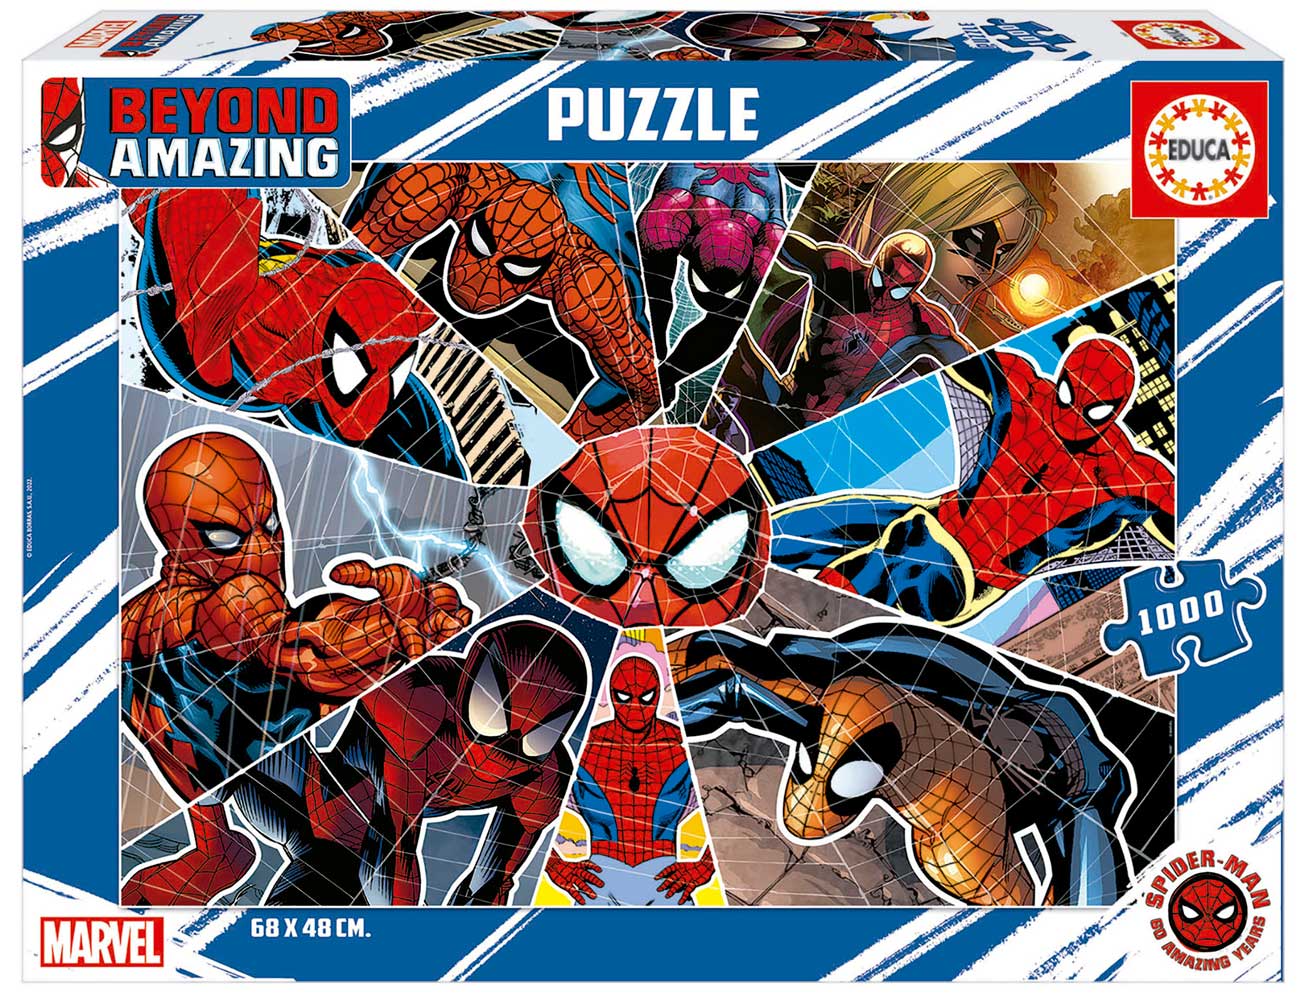 Puzzle Educa Spiderman Beyond Amazing de 1000 peças